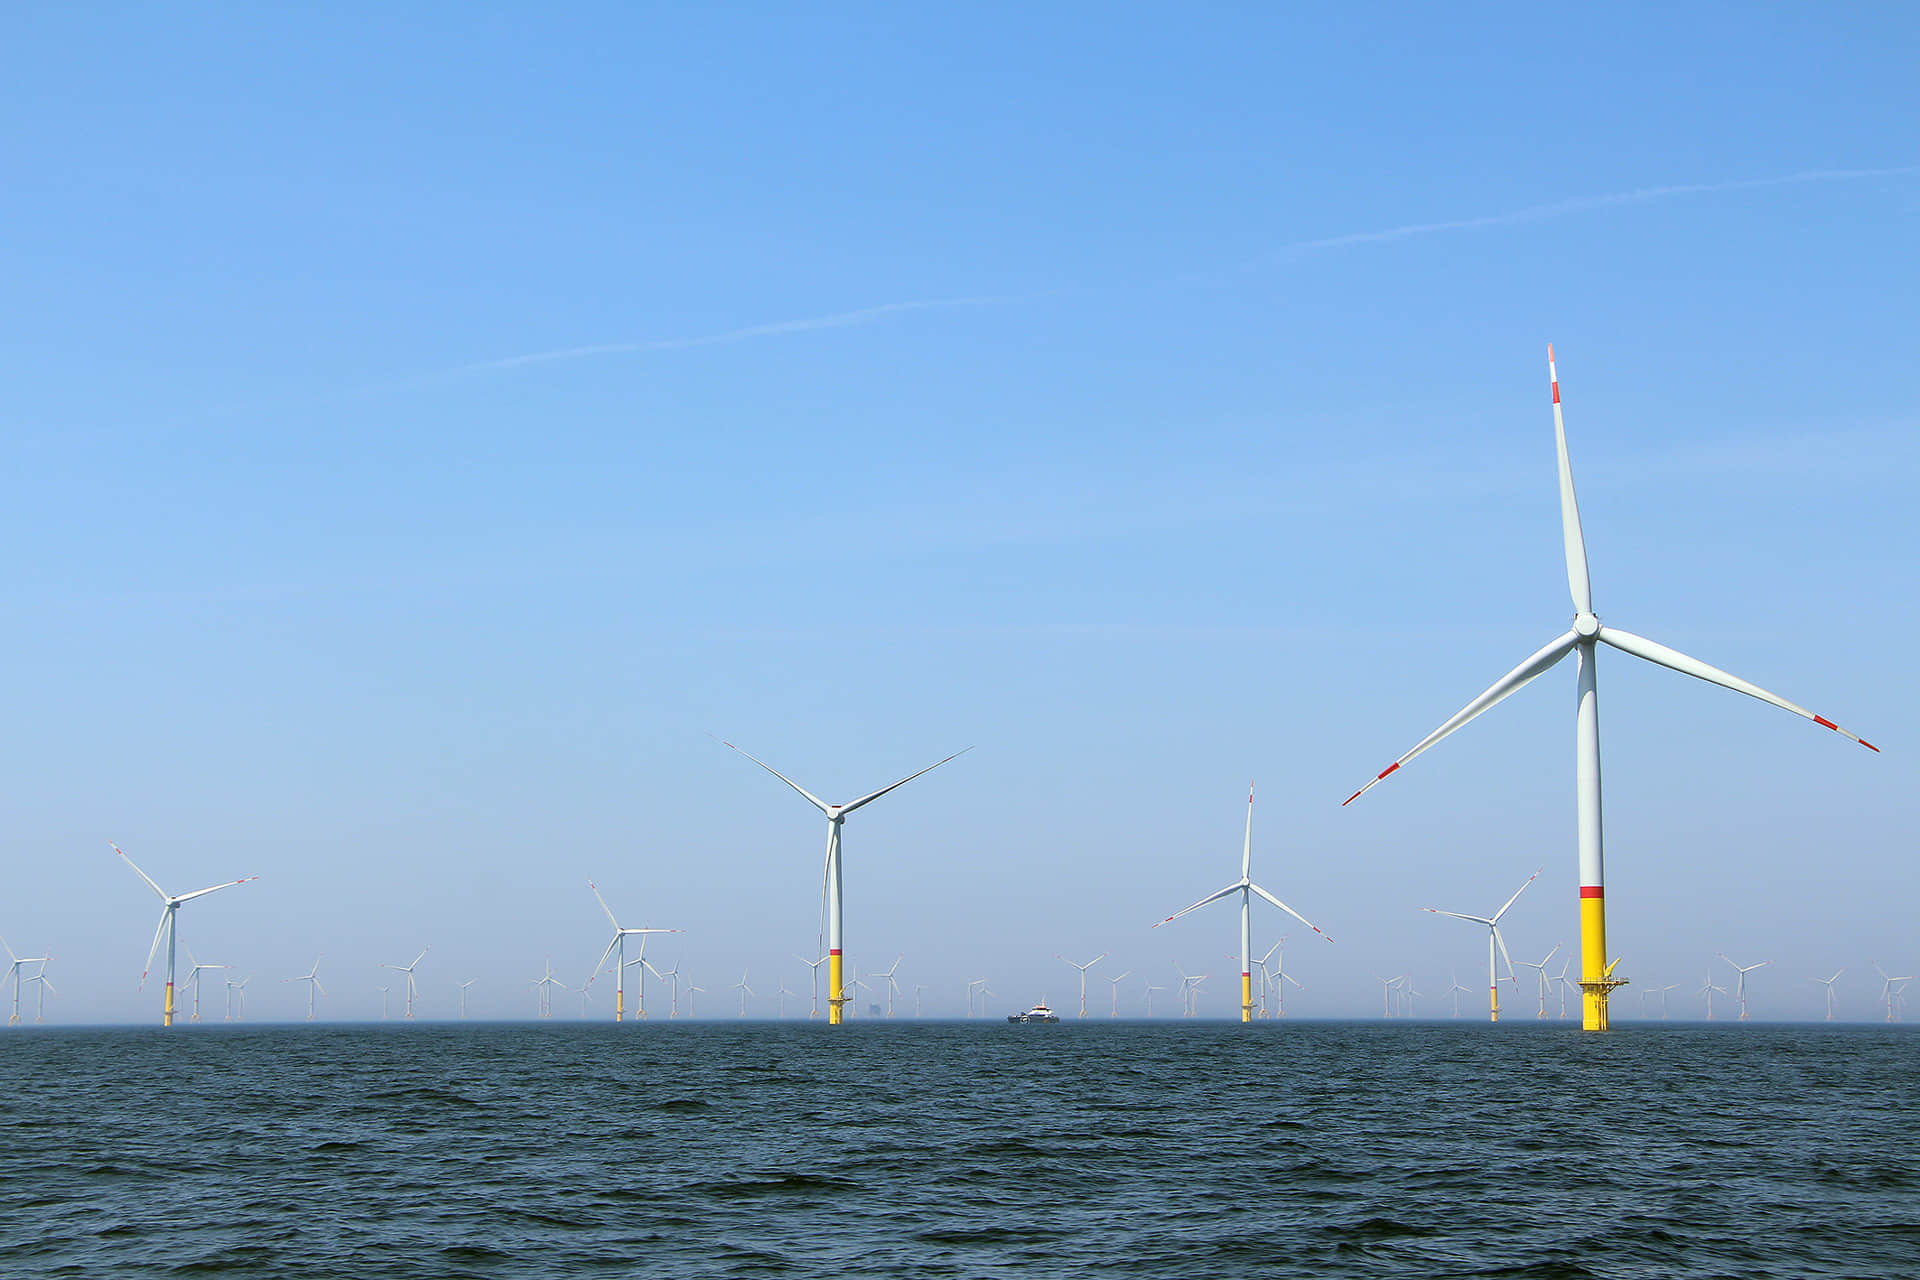 A Baltic Sea offshore wind farm